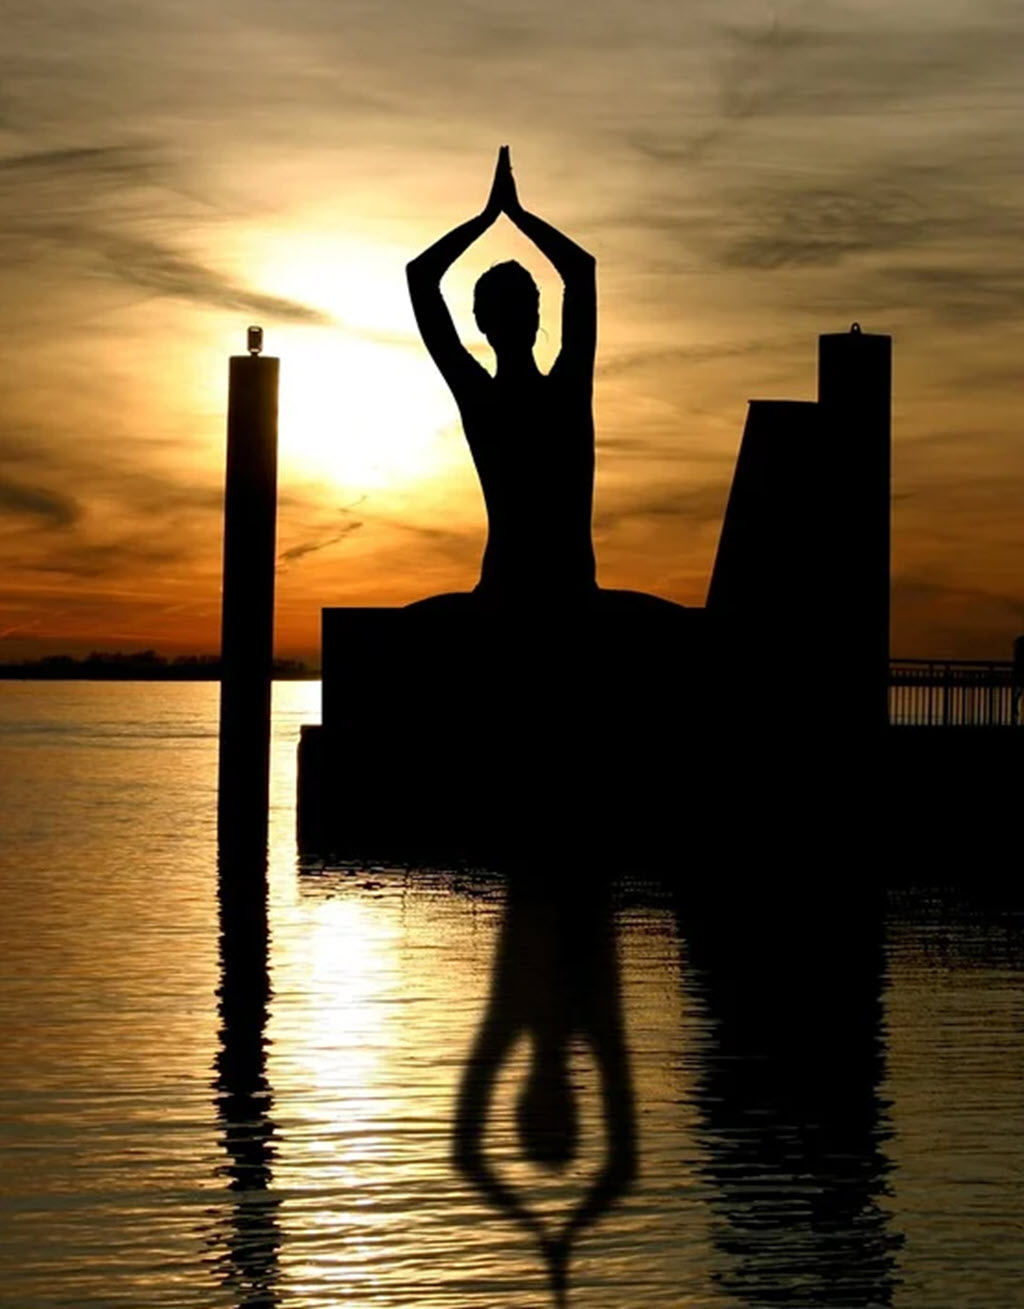 Yin yoga benefits